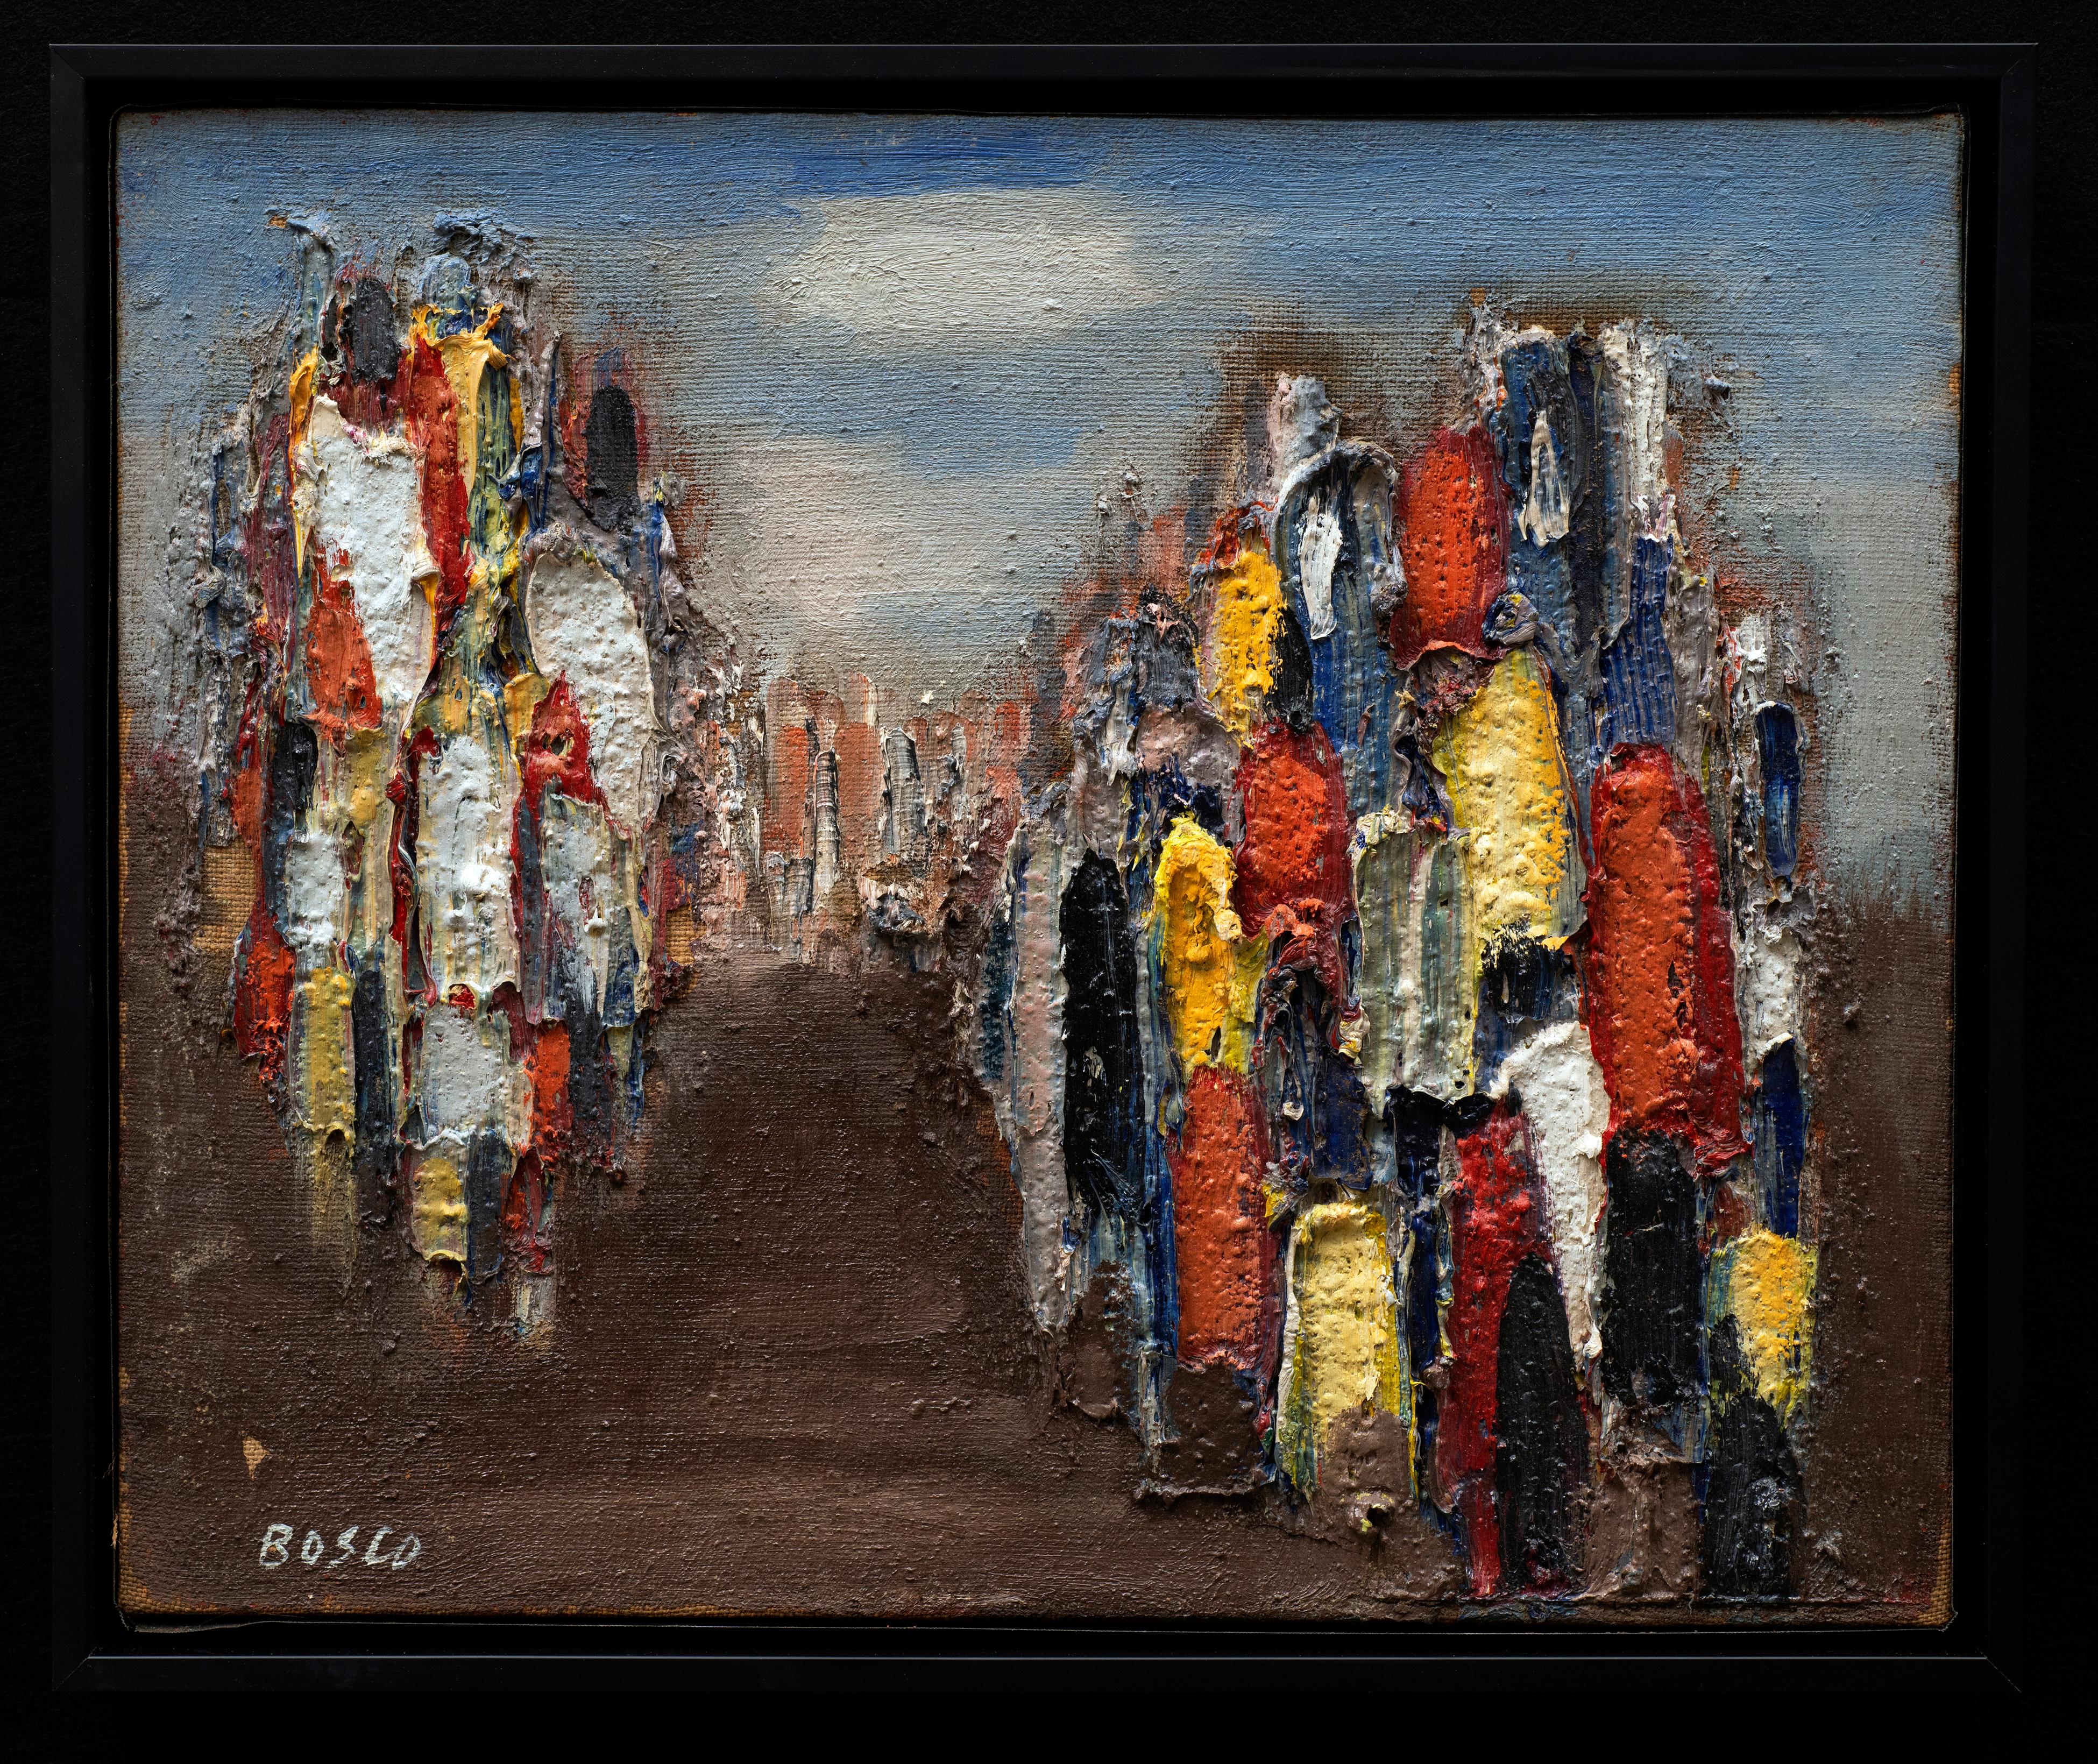 Mid-Century "Les Emigrants" #34
Pierre Bosco (Italie/France, 1909-1993)
Huile sur toile
19 1/2 x 16 1/4 pouces, taille du cadre

" L'art sauvage de Bosco porte sa rudesse et son mystère. C'est un art d'expression pure qui n'est pas fait pour plaire,